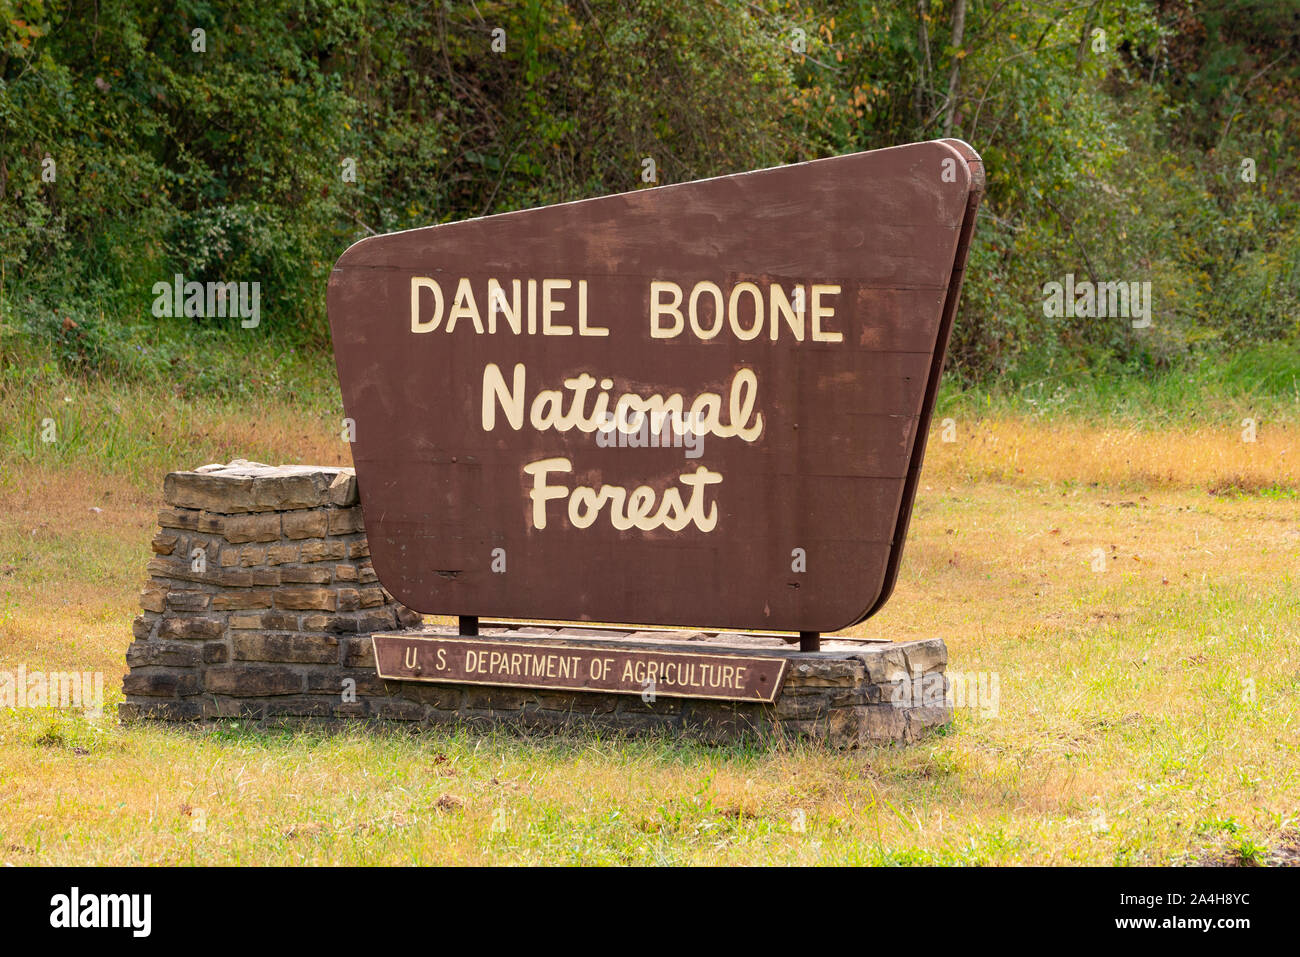 Un cartel de madera marca el límite de Daniel Boone National Forest Foto de stock